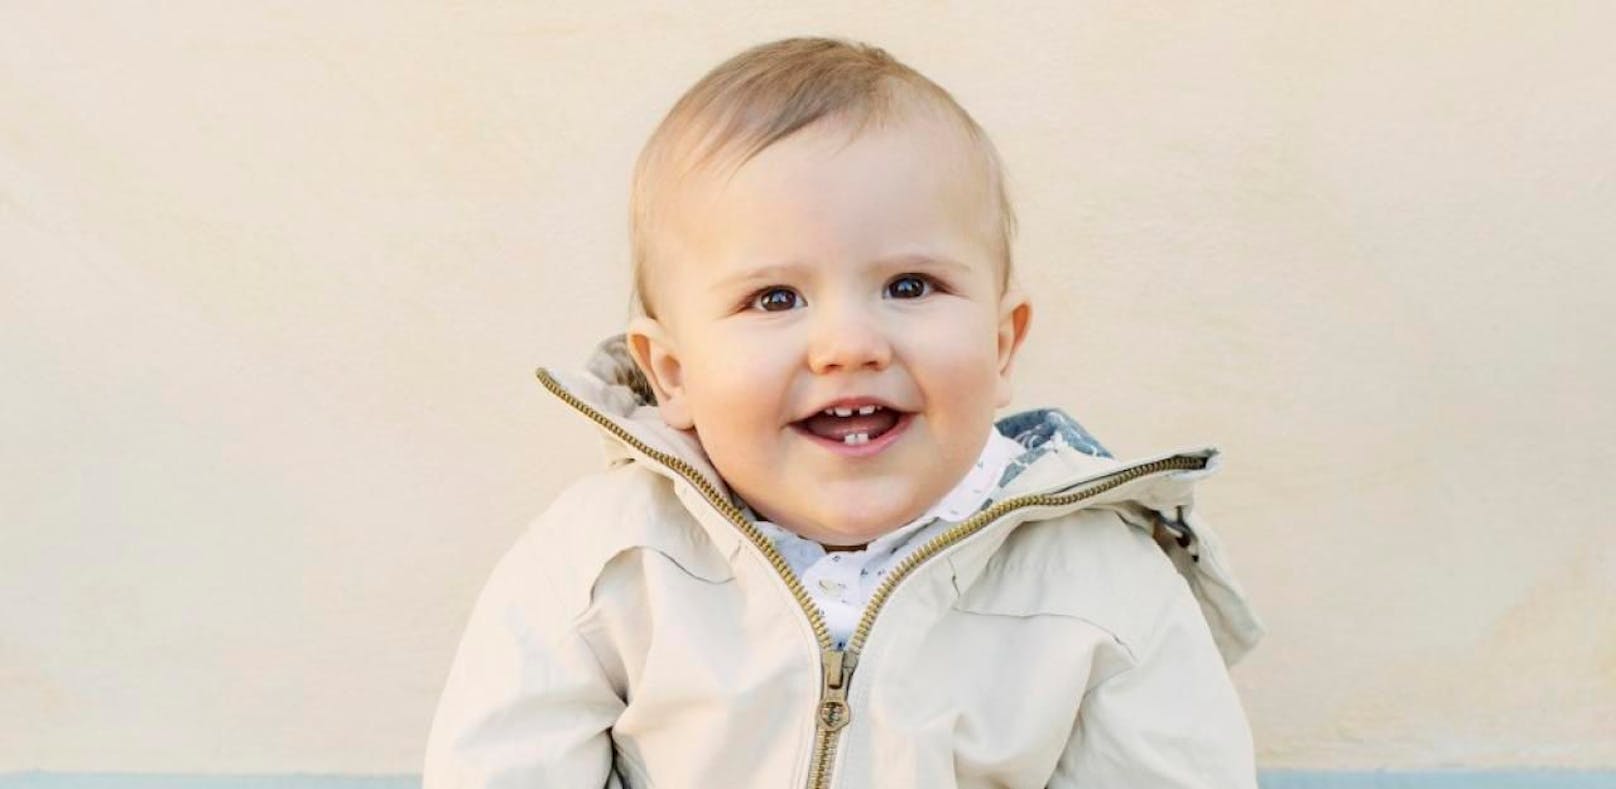 Prinz Alexander zeigt zum 1. Geburtstag seine Zähne